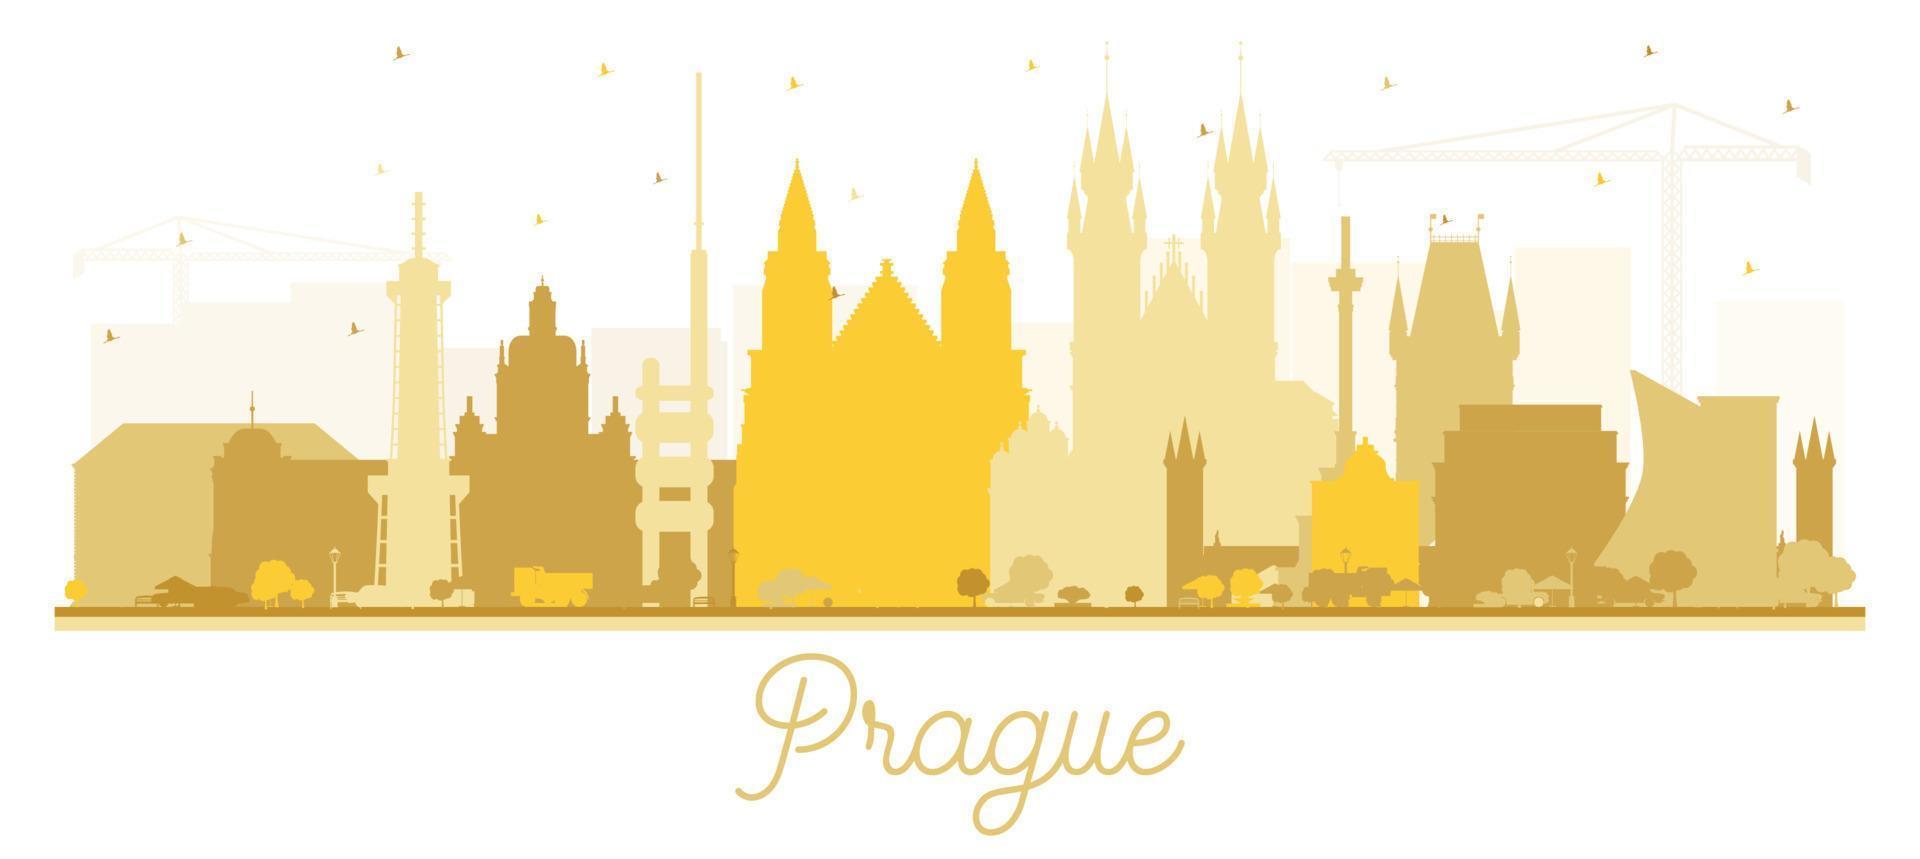 prag tschechische republik stadtsilhouette mit goldenen gebäuden isoliert auf weiß. vektor